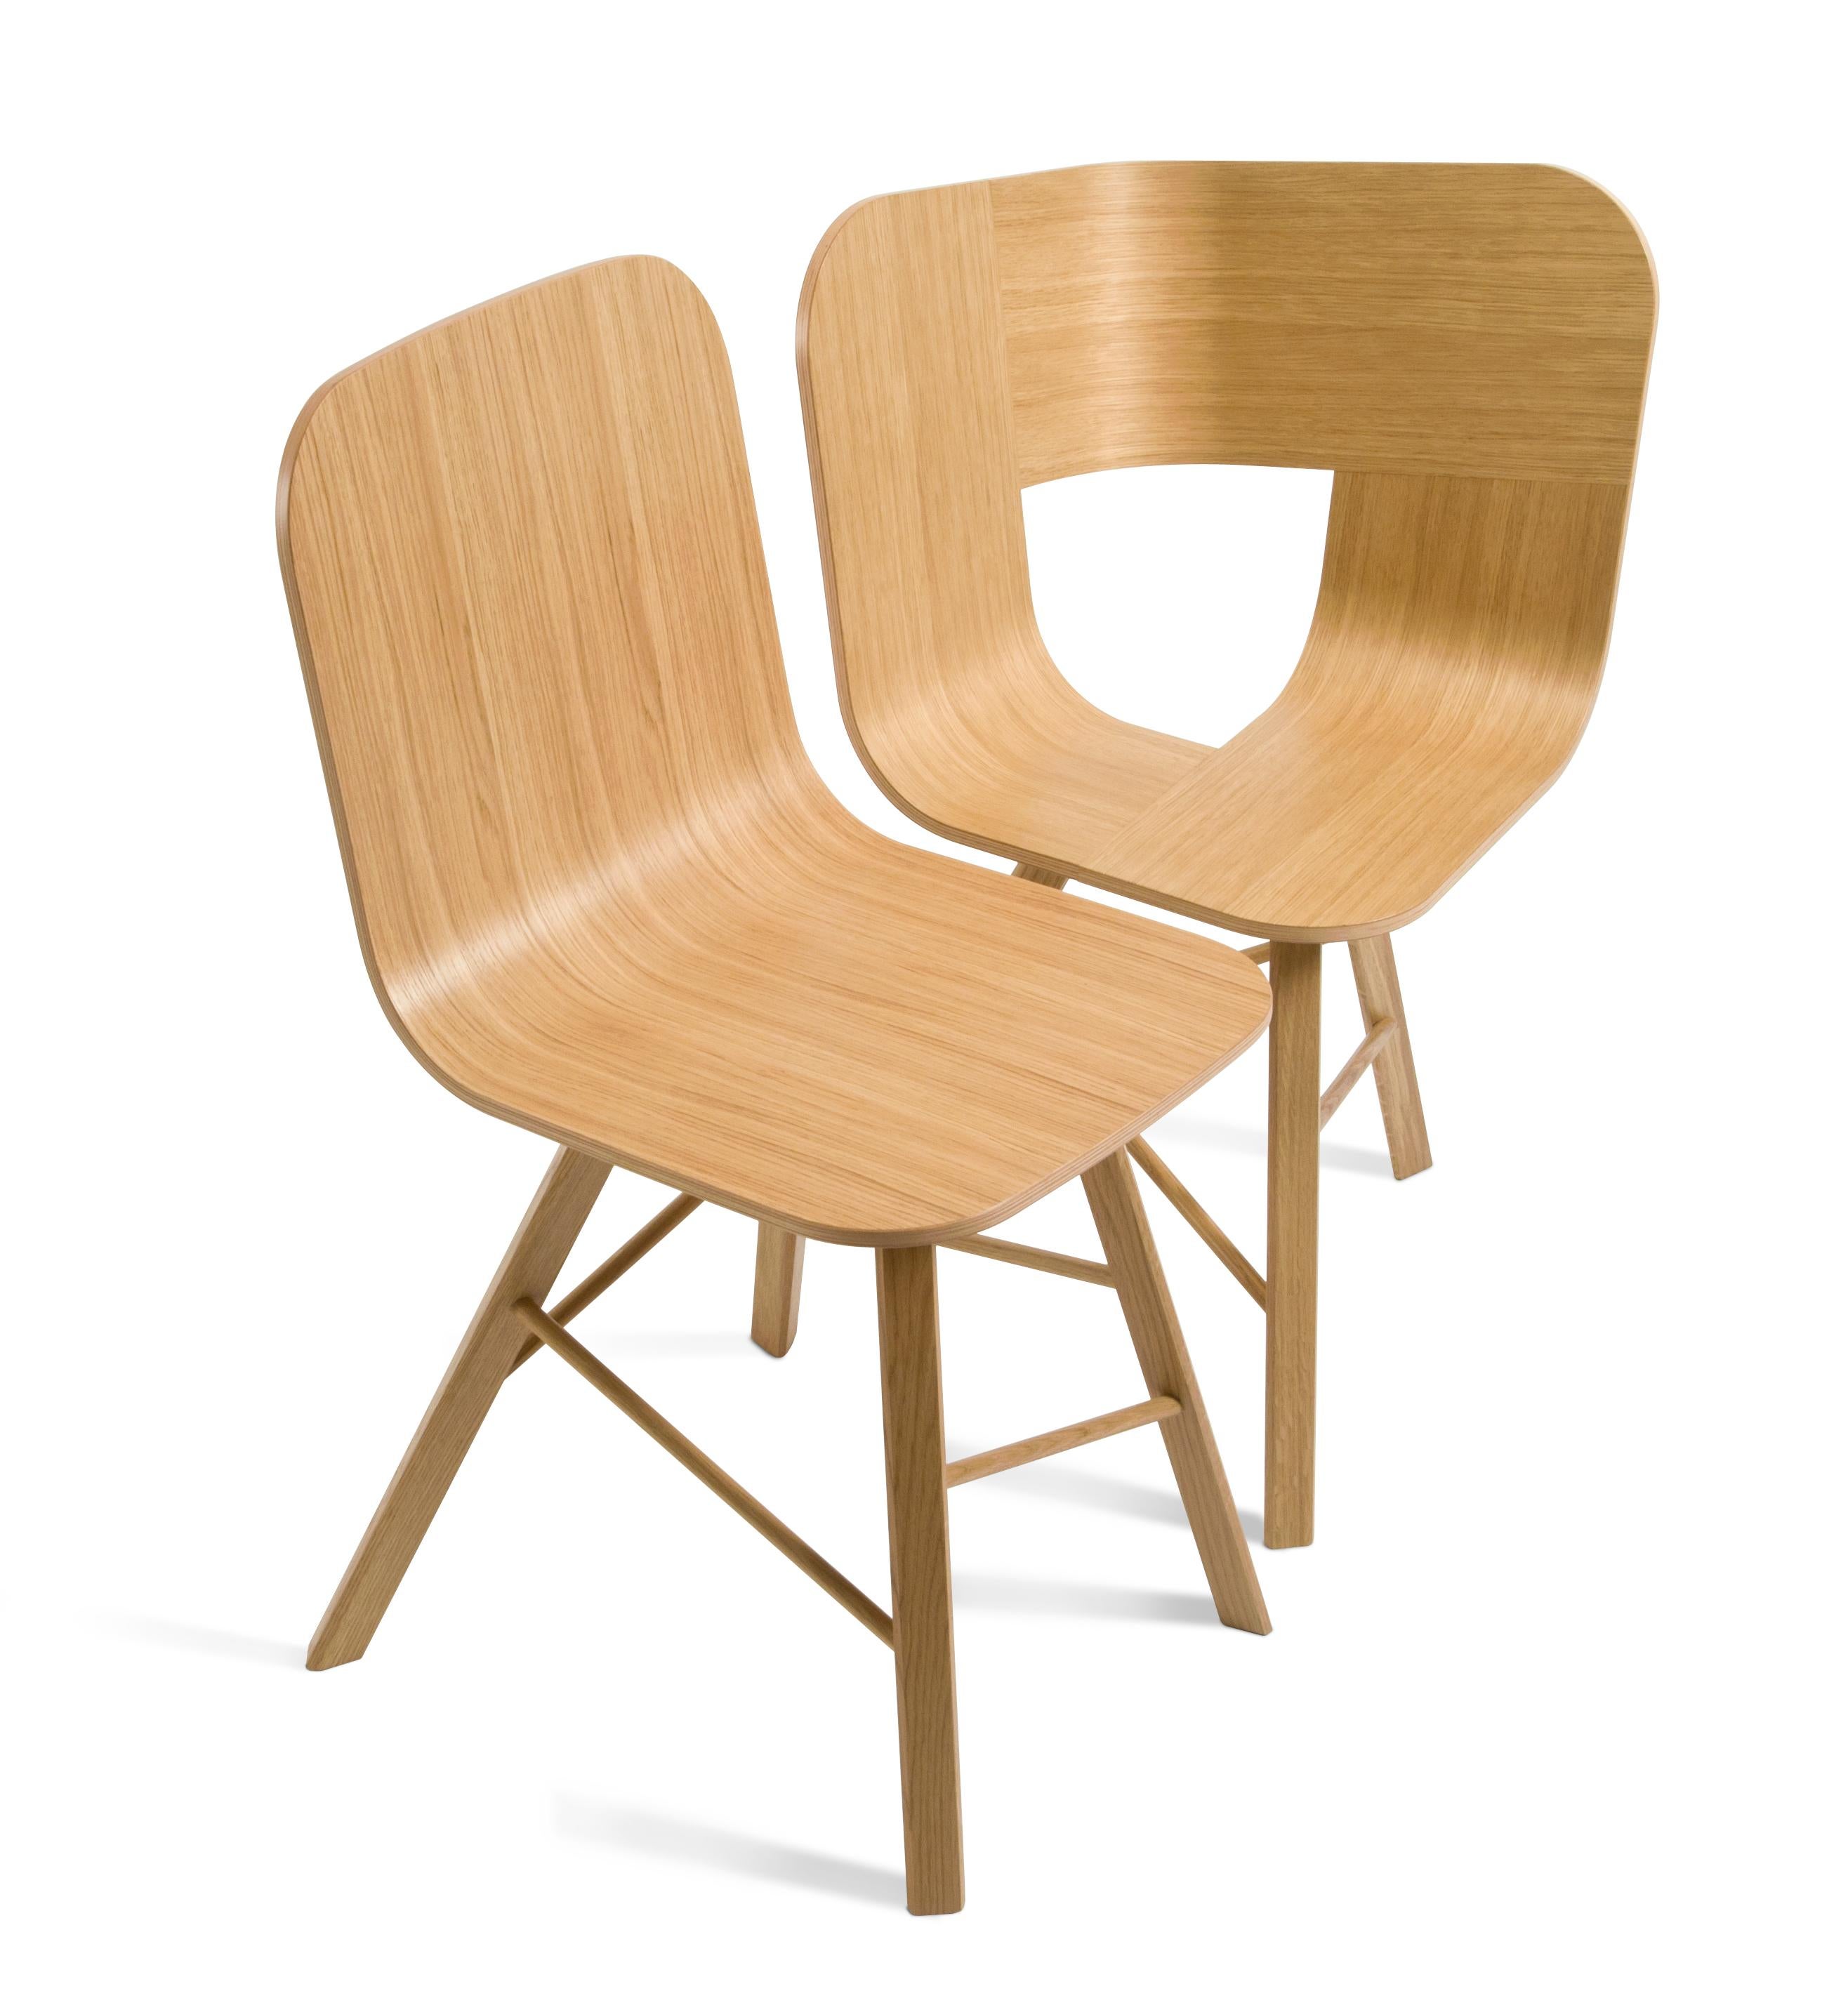 Essentieller und eleganter Stuhl mit einer gebogenen Sperrholzschale und vier ikonischen Beinen in Dreiecksform aus massiver Eiche, die durch quer verlaufende Holzstäbe verbunden sind.
Das Regal ist in zwei verschiedenen Varianten erhältlich: Holz